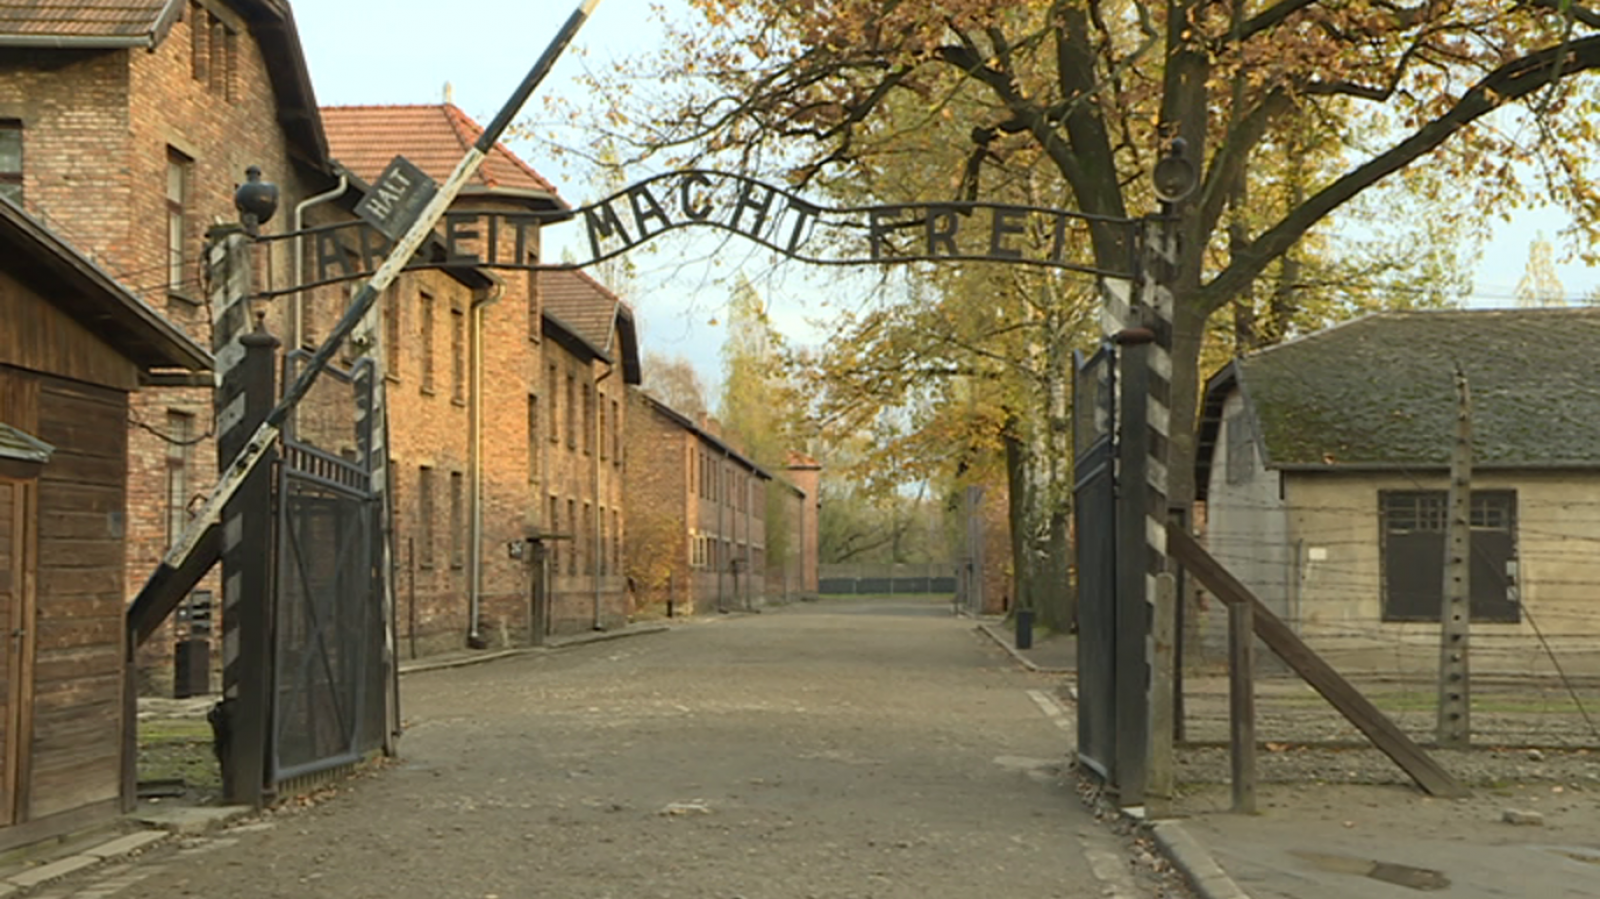 Shalom - Reflexiones 75 años después de Auschwitz - RTVE.es